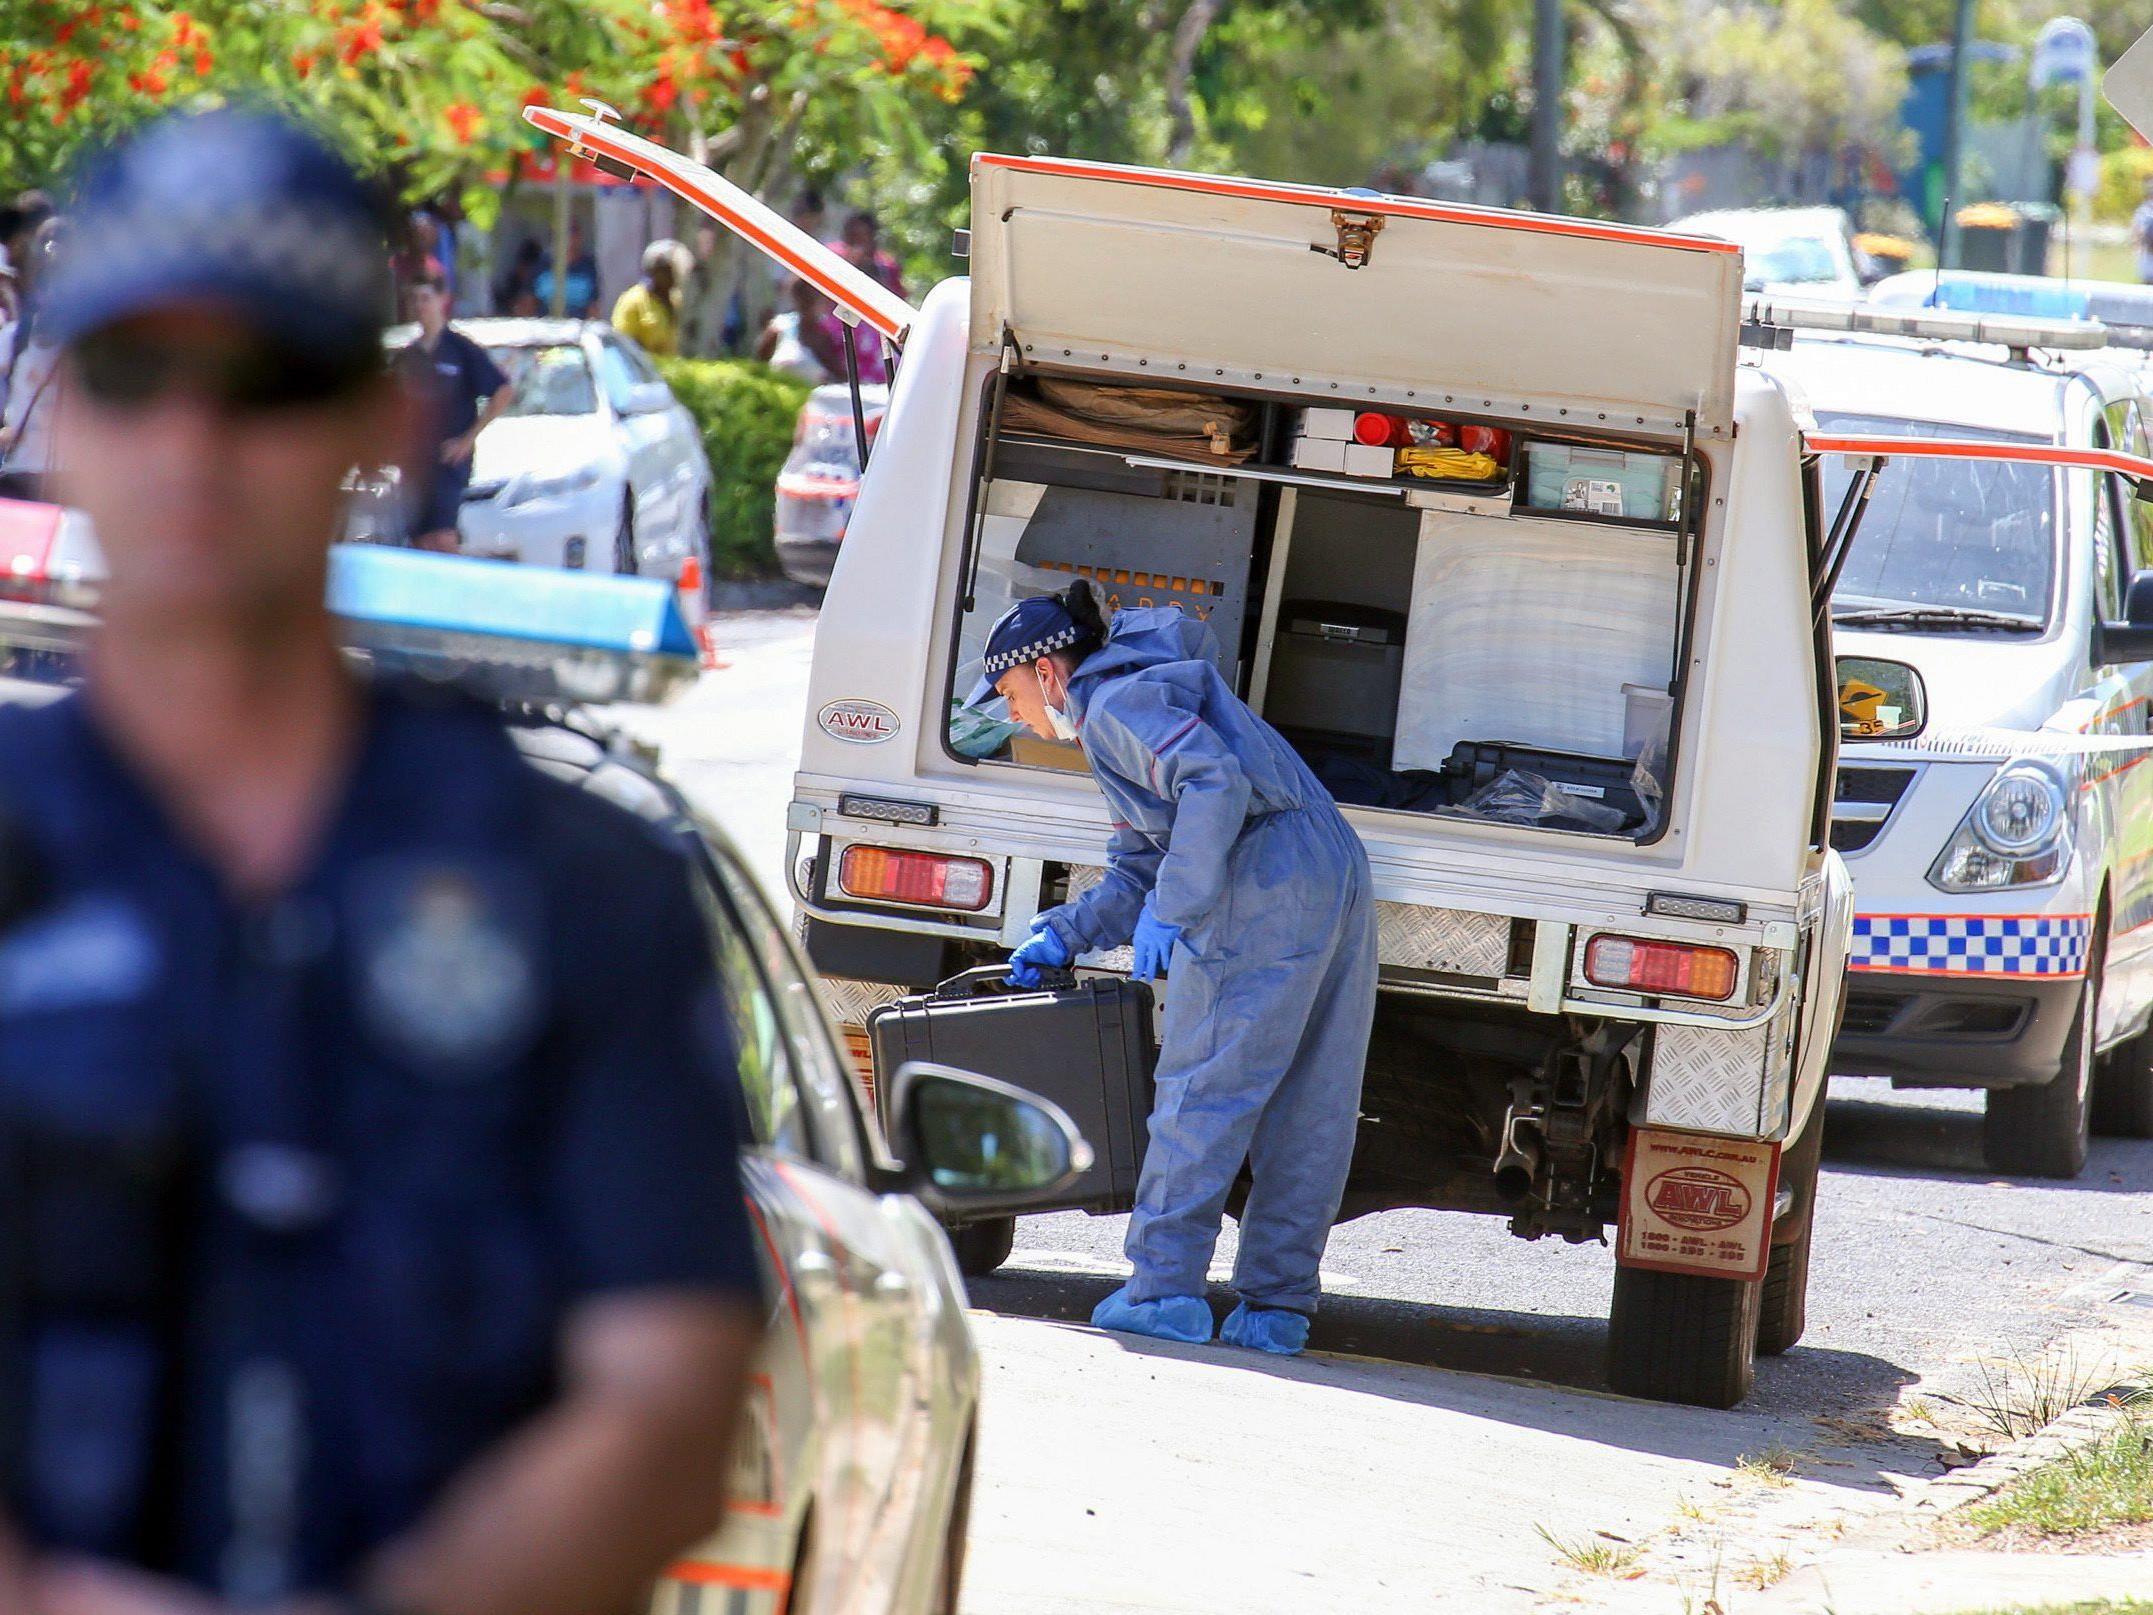 Tragödie erschüttert Australien: Acht Kinder ermordet aufgefunden.